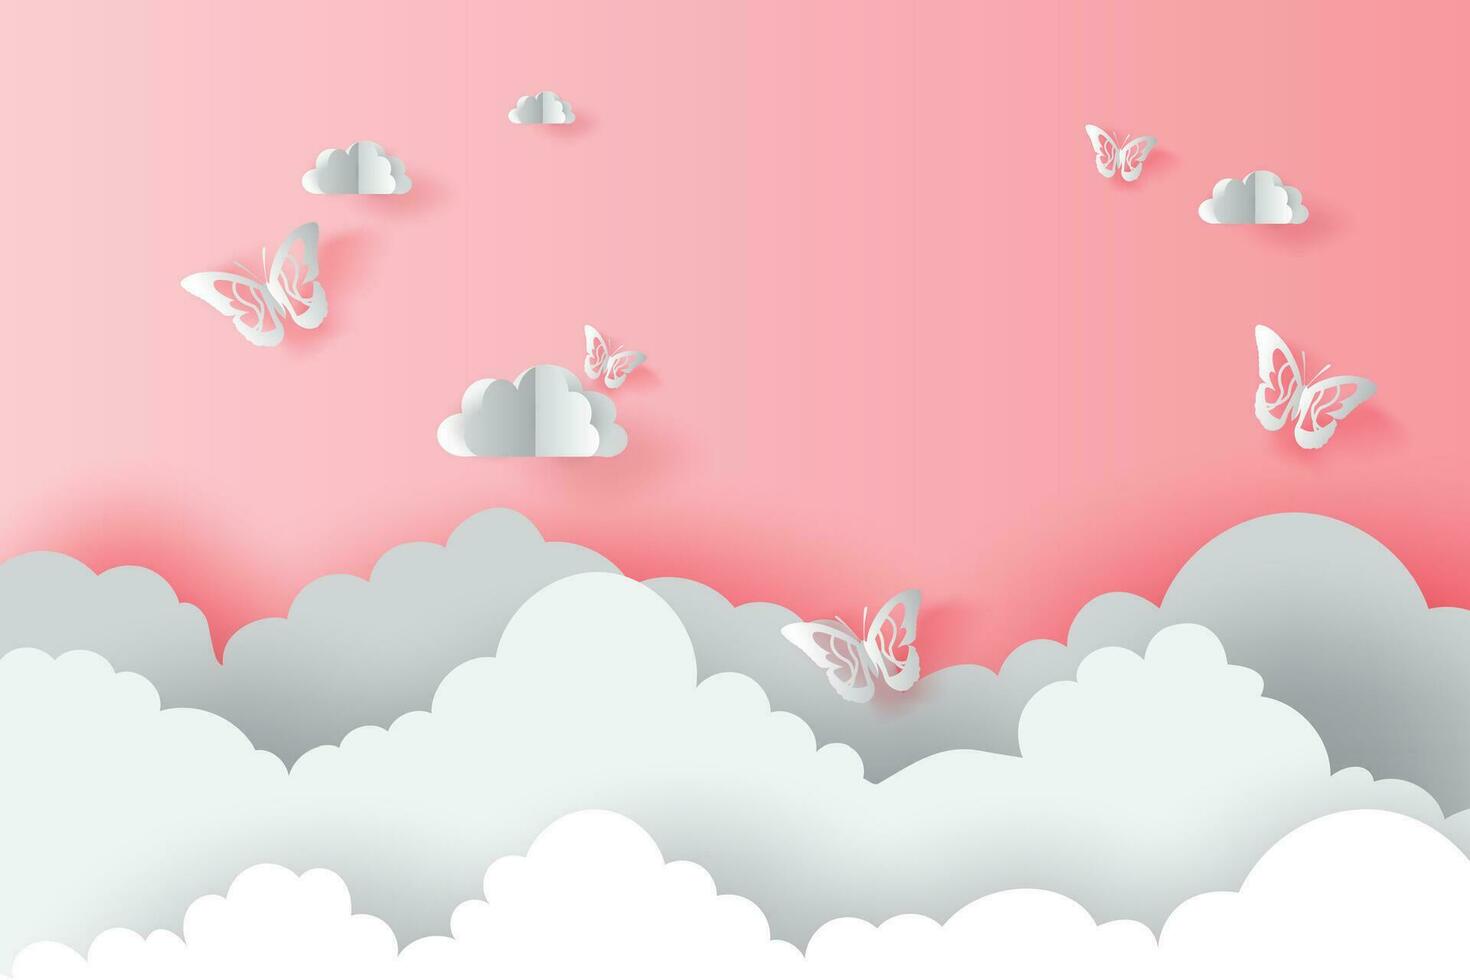 illustration papper konst moln med fjärilar på rosa valentine koncept.fjäril flygande i de sky.creative design papper skära och hantverk stil origami molnig och himmel för landskap.pastell färg.vektor vektor